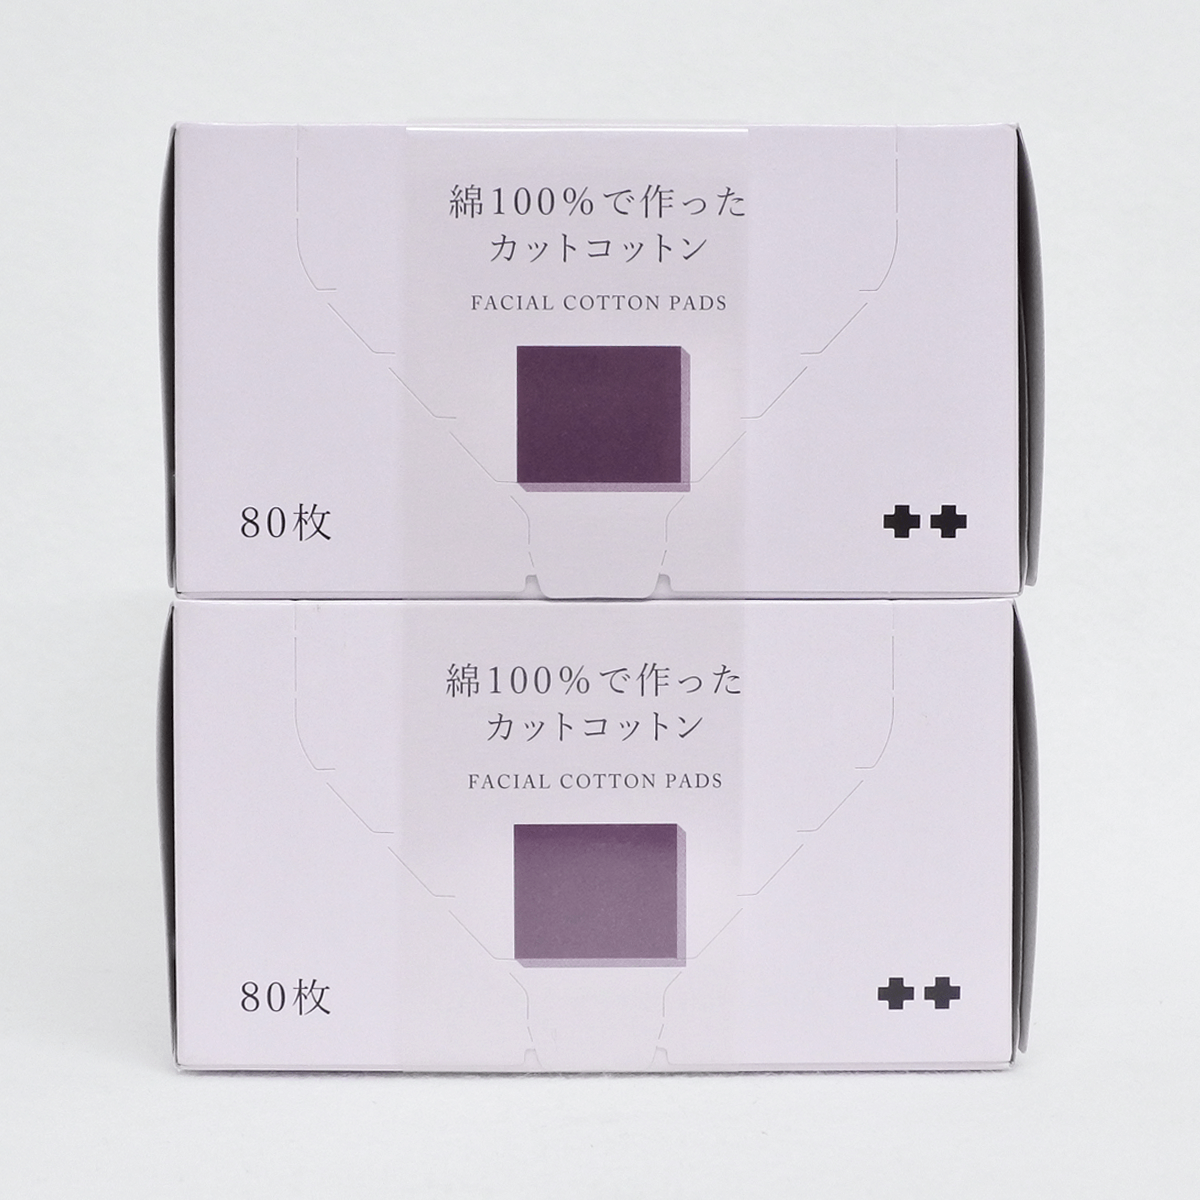 札幌药妆 化妆棉 薄款 80片x2盒